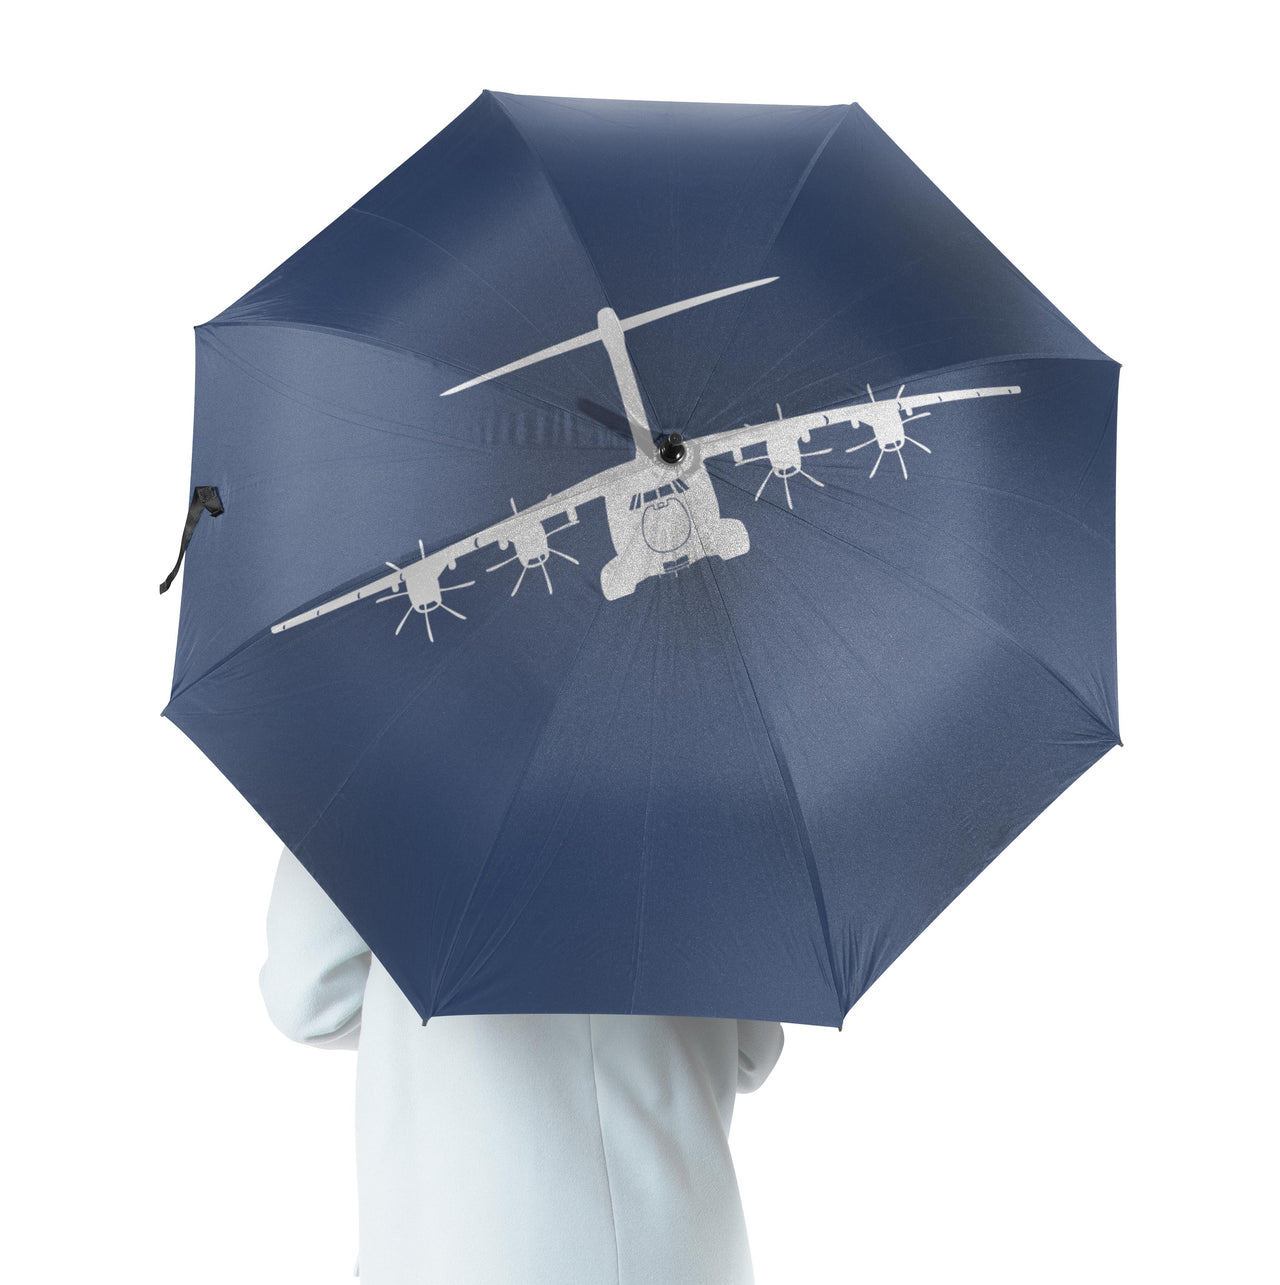 Airbus A400M Silhouette Designed Umbrella